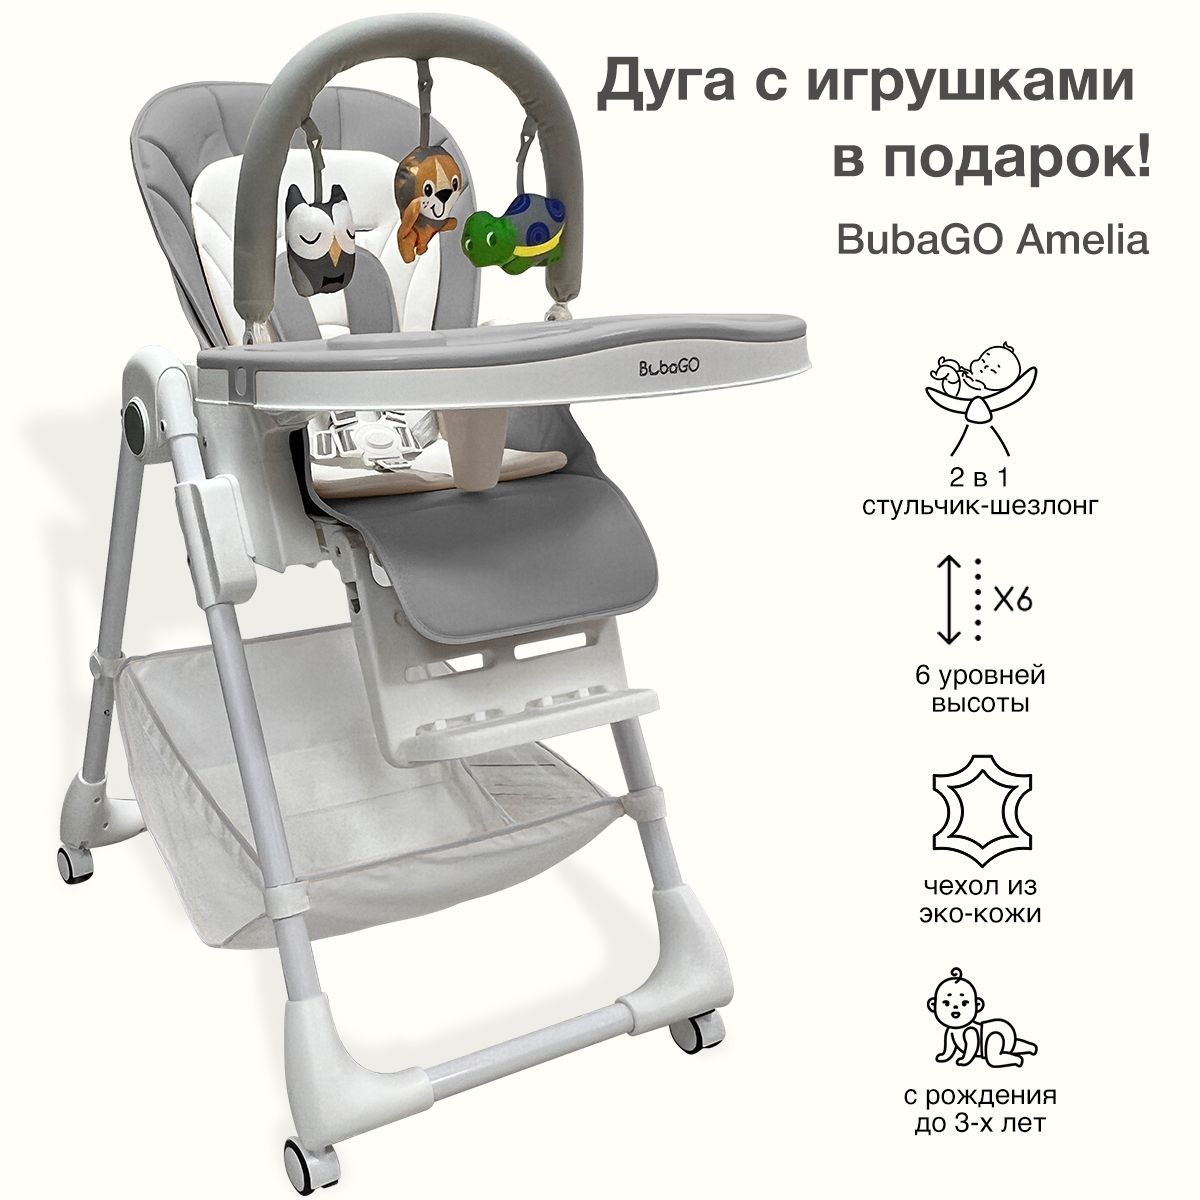 Ремни безопасности на детский стульчик для кормления